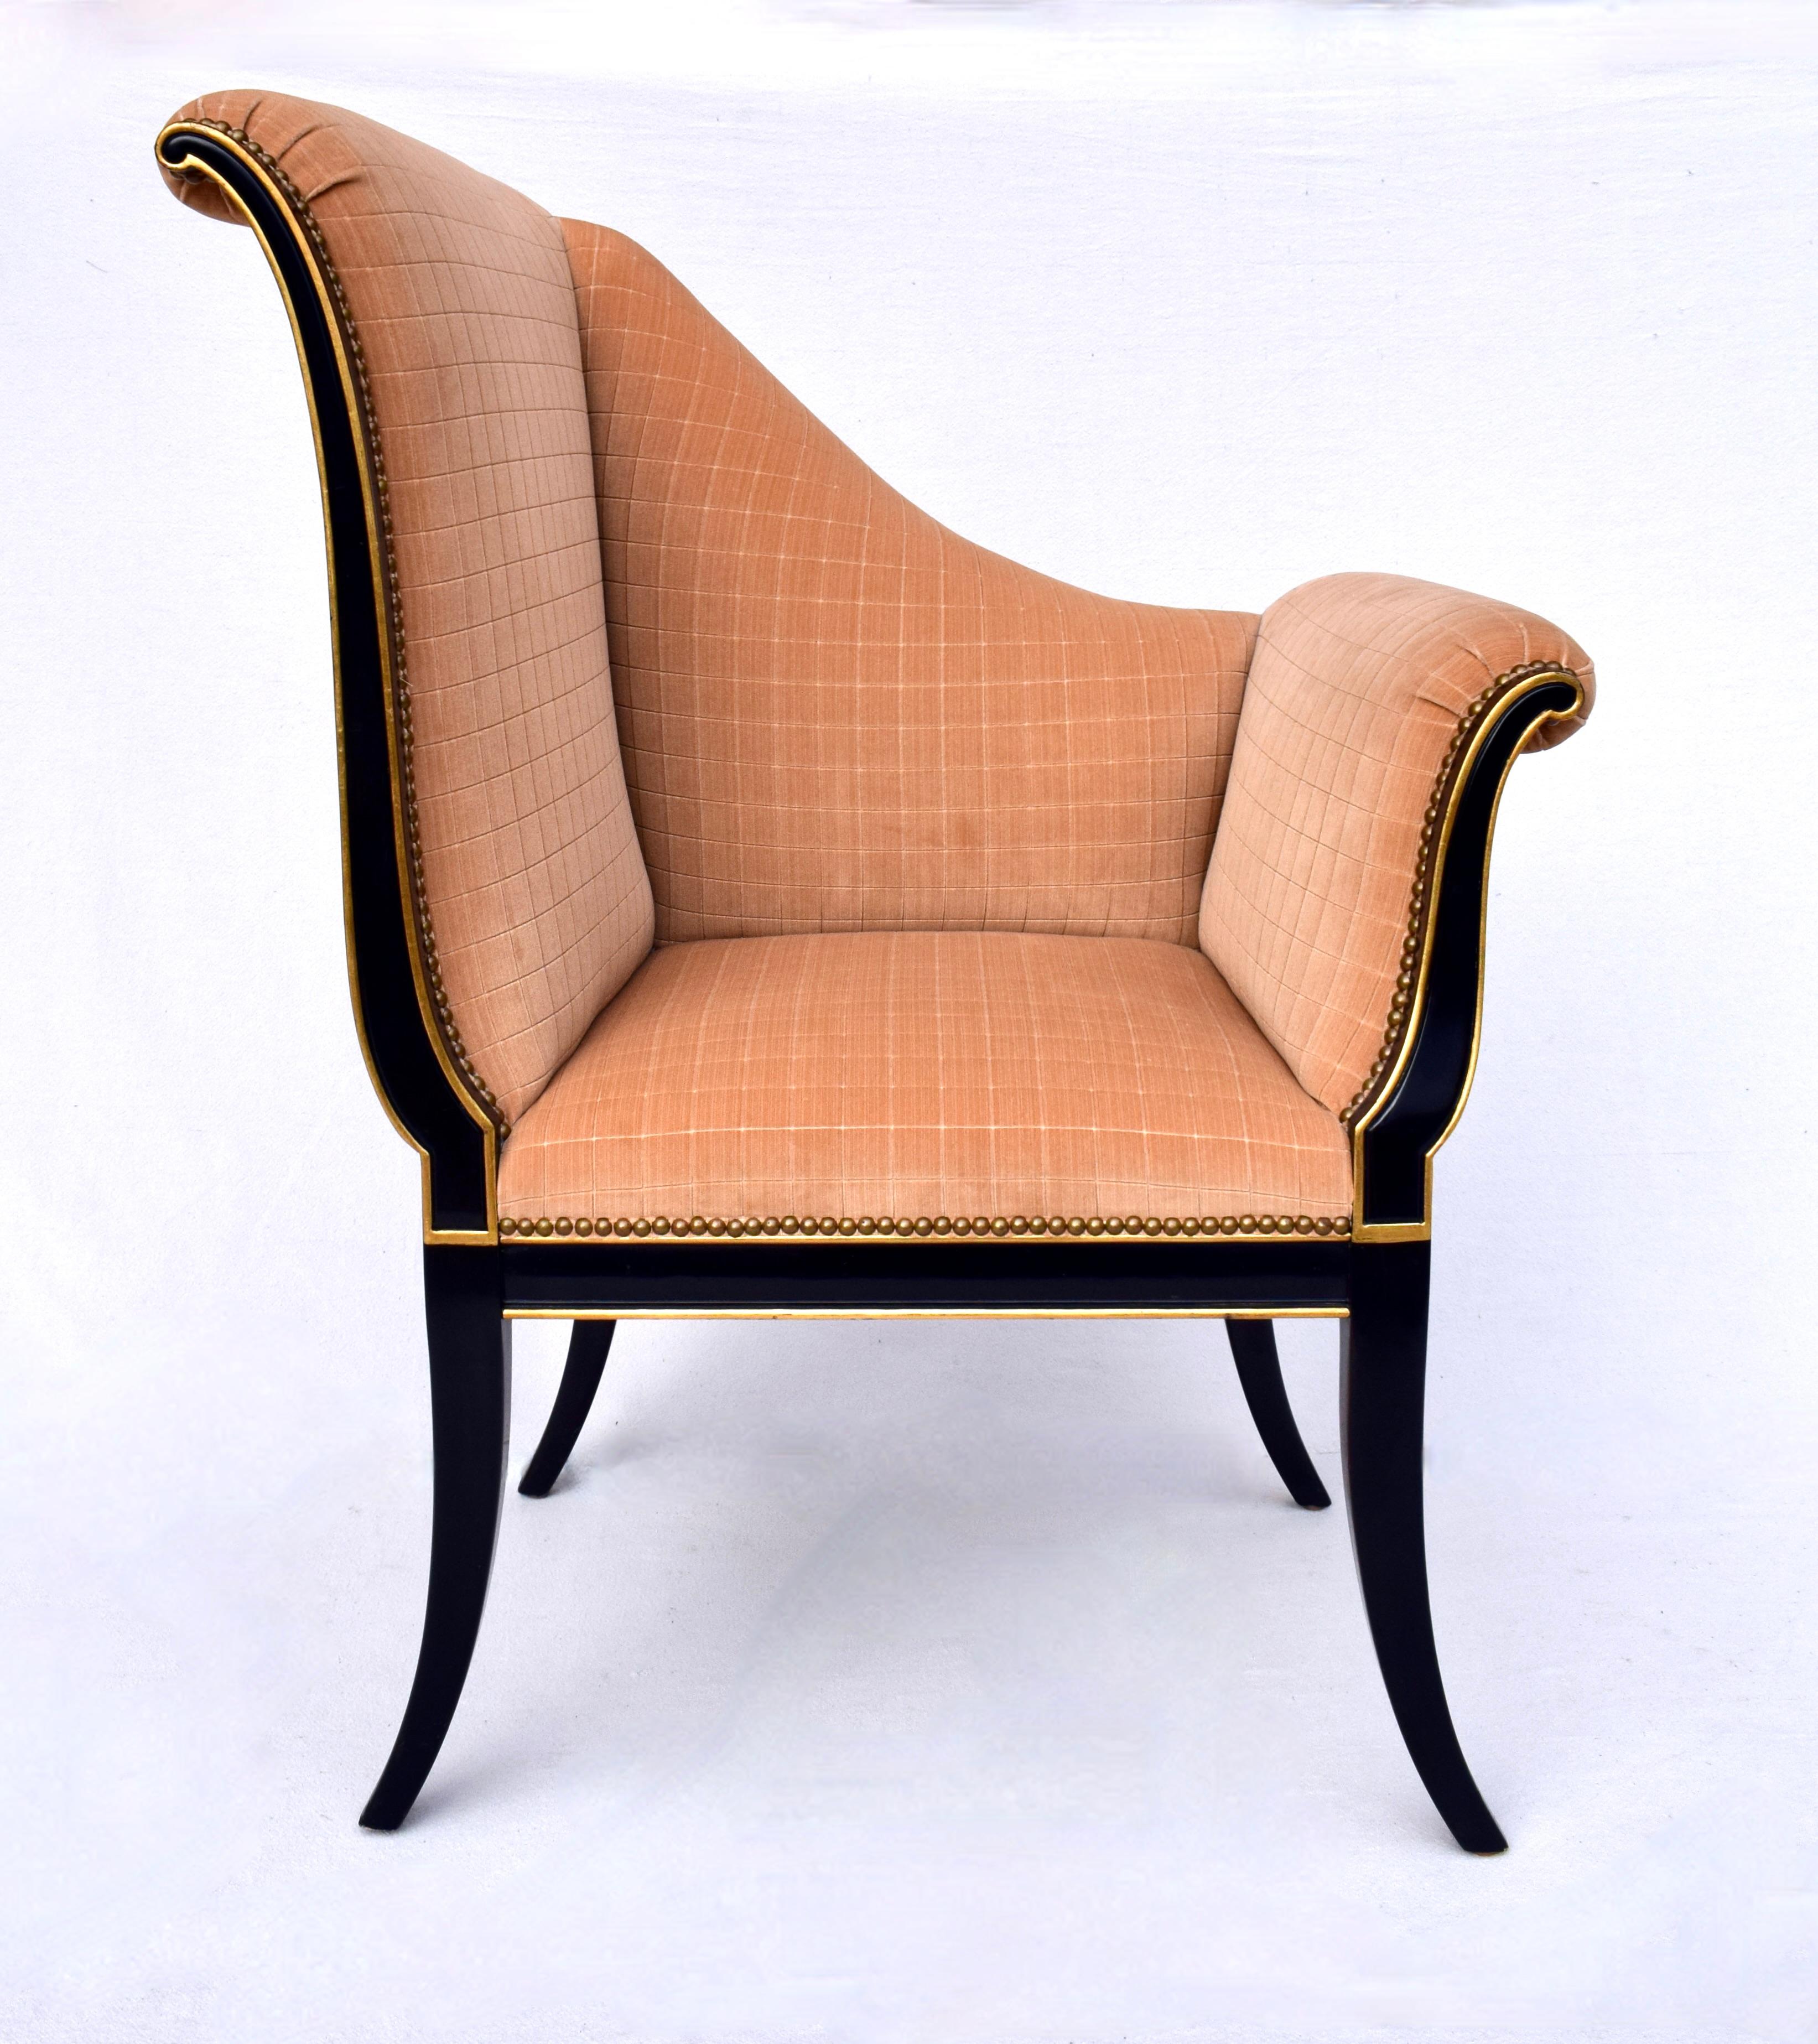 Karges Furniture Parler Deux Right & Left Regency Chairs For Sale 1